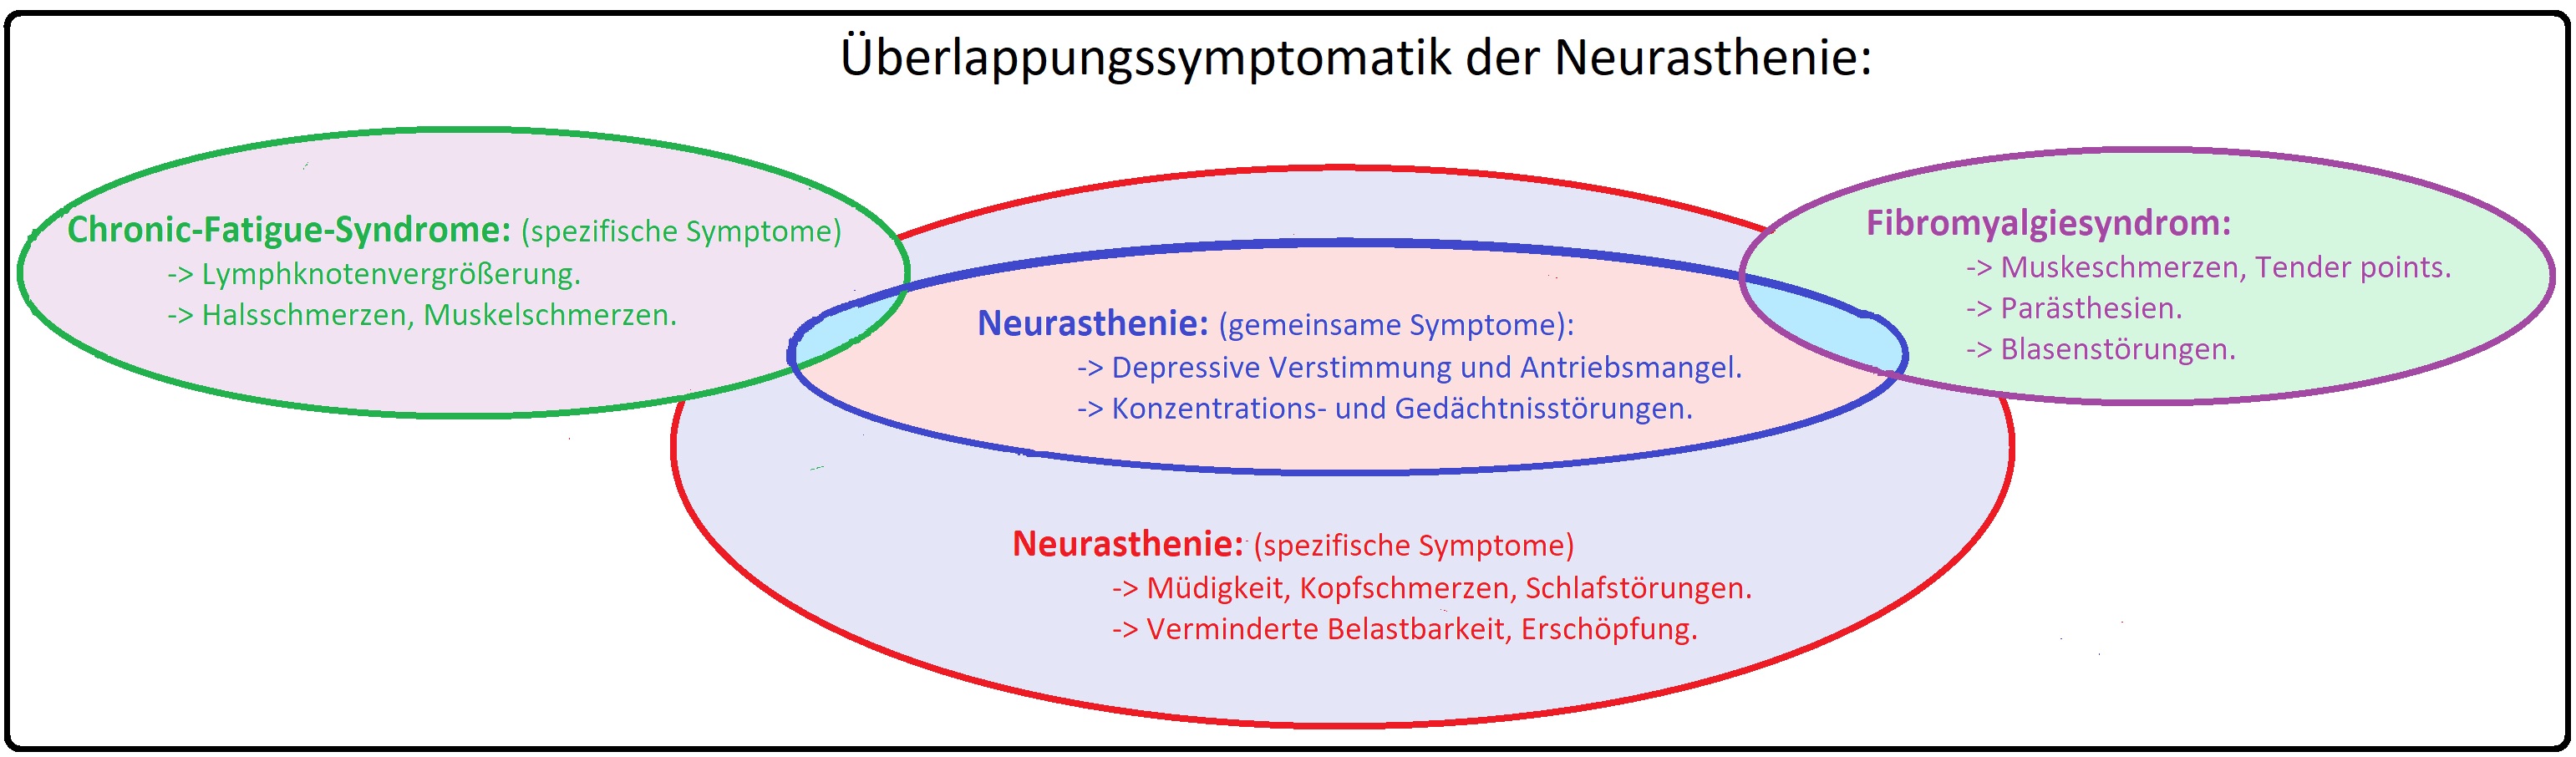 339 Überlappungssymptomatik der Neurasthenie